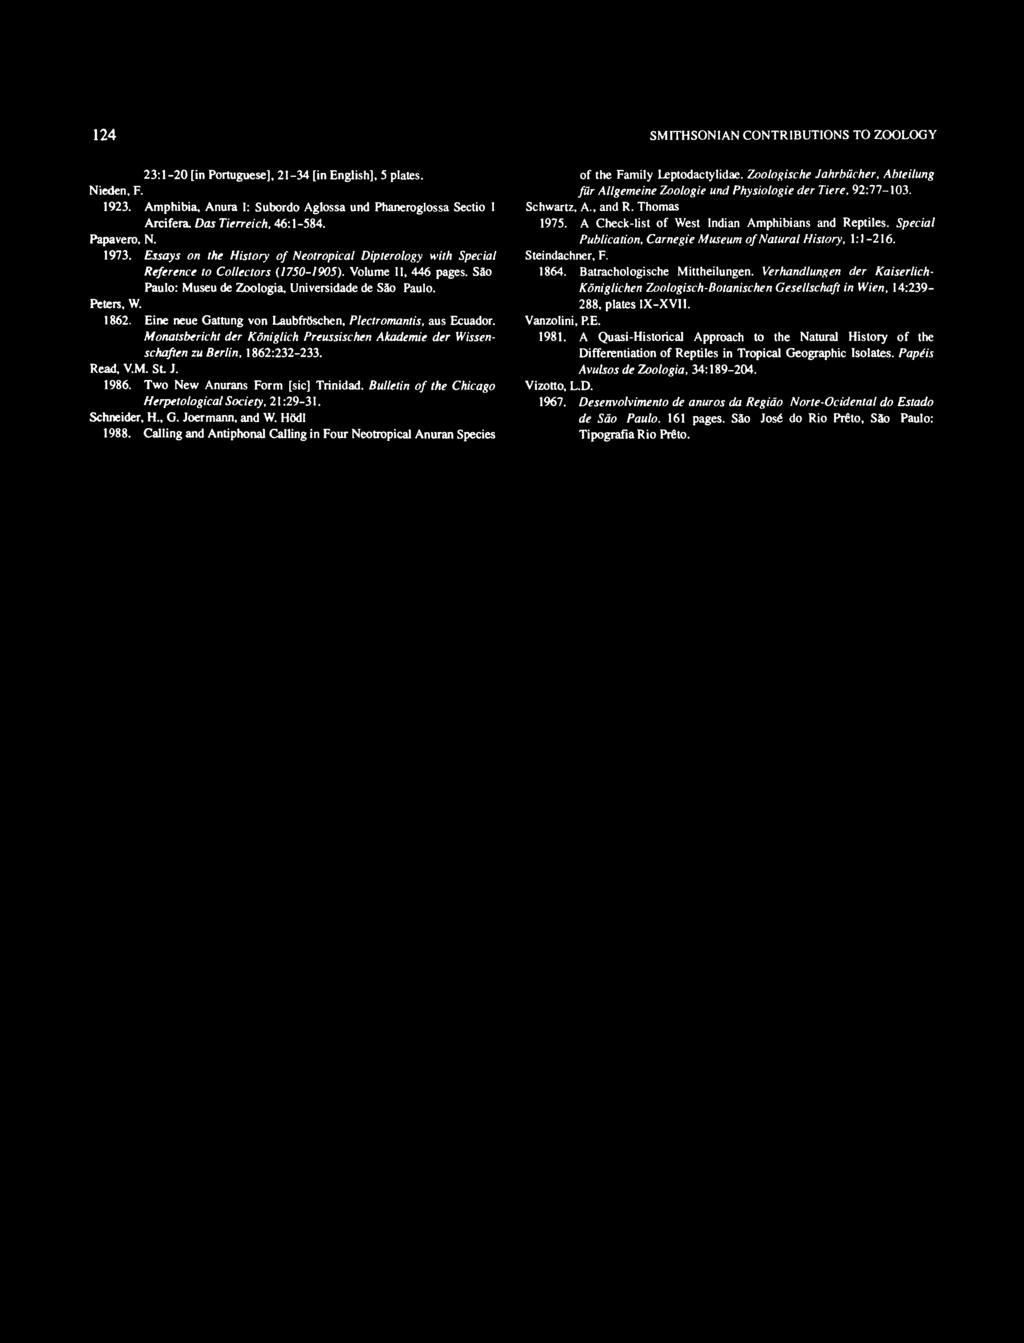 Peters, W. 862. Eine neue Gattung von Laubfroschen, Plectromantis, aus Ecuador. onatsbericht der Koniglich Preussischen Akademie der Wissenschaften zu Berlin, 862:232-233. Read, V.. St J. 986.